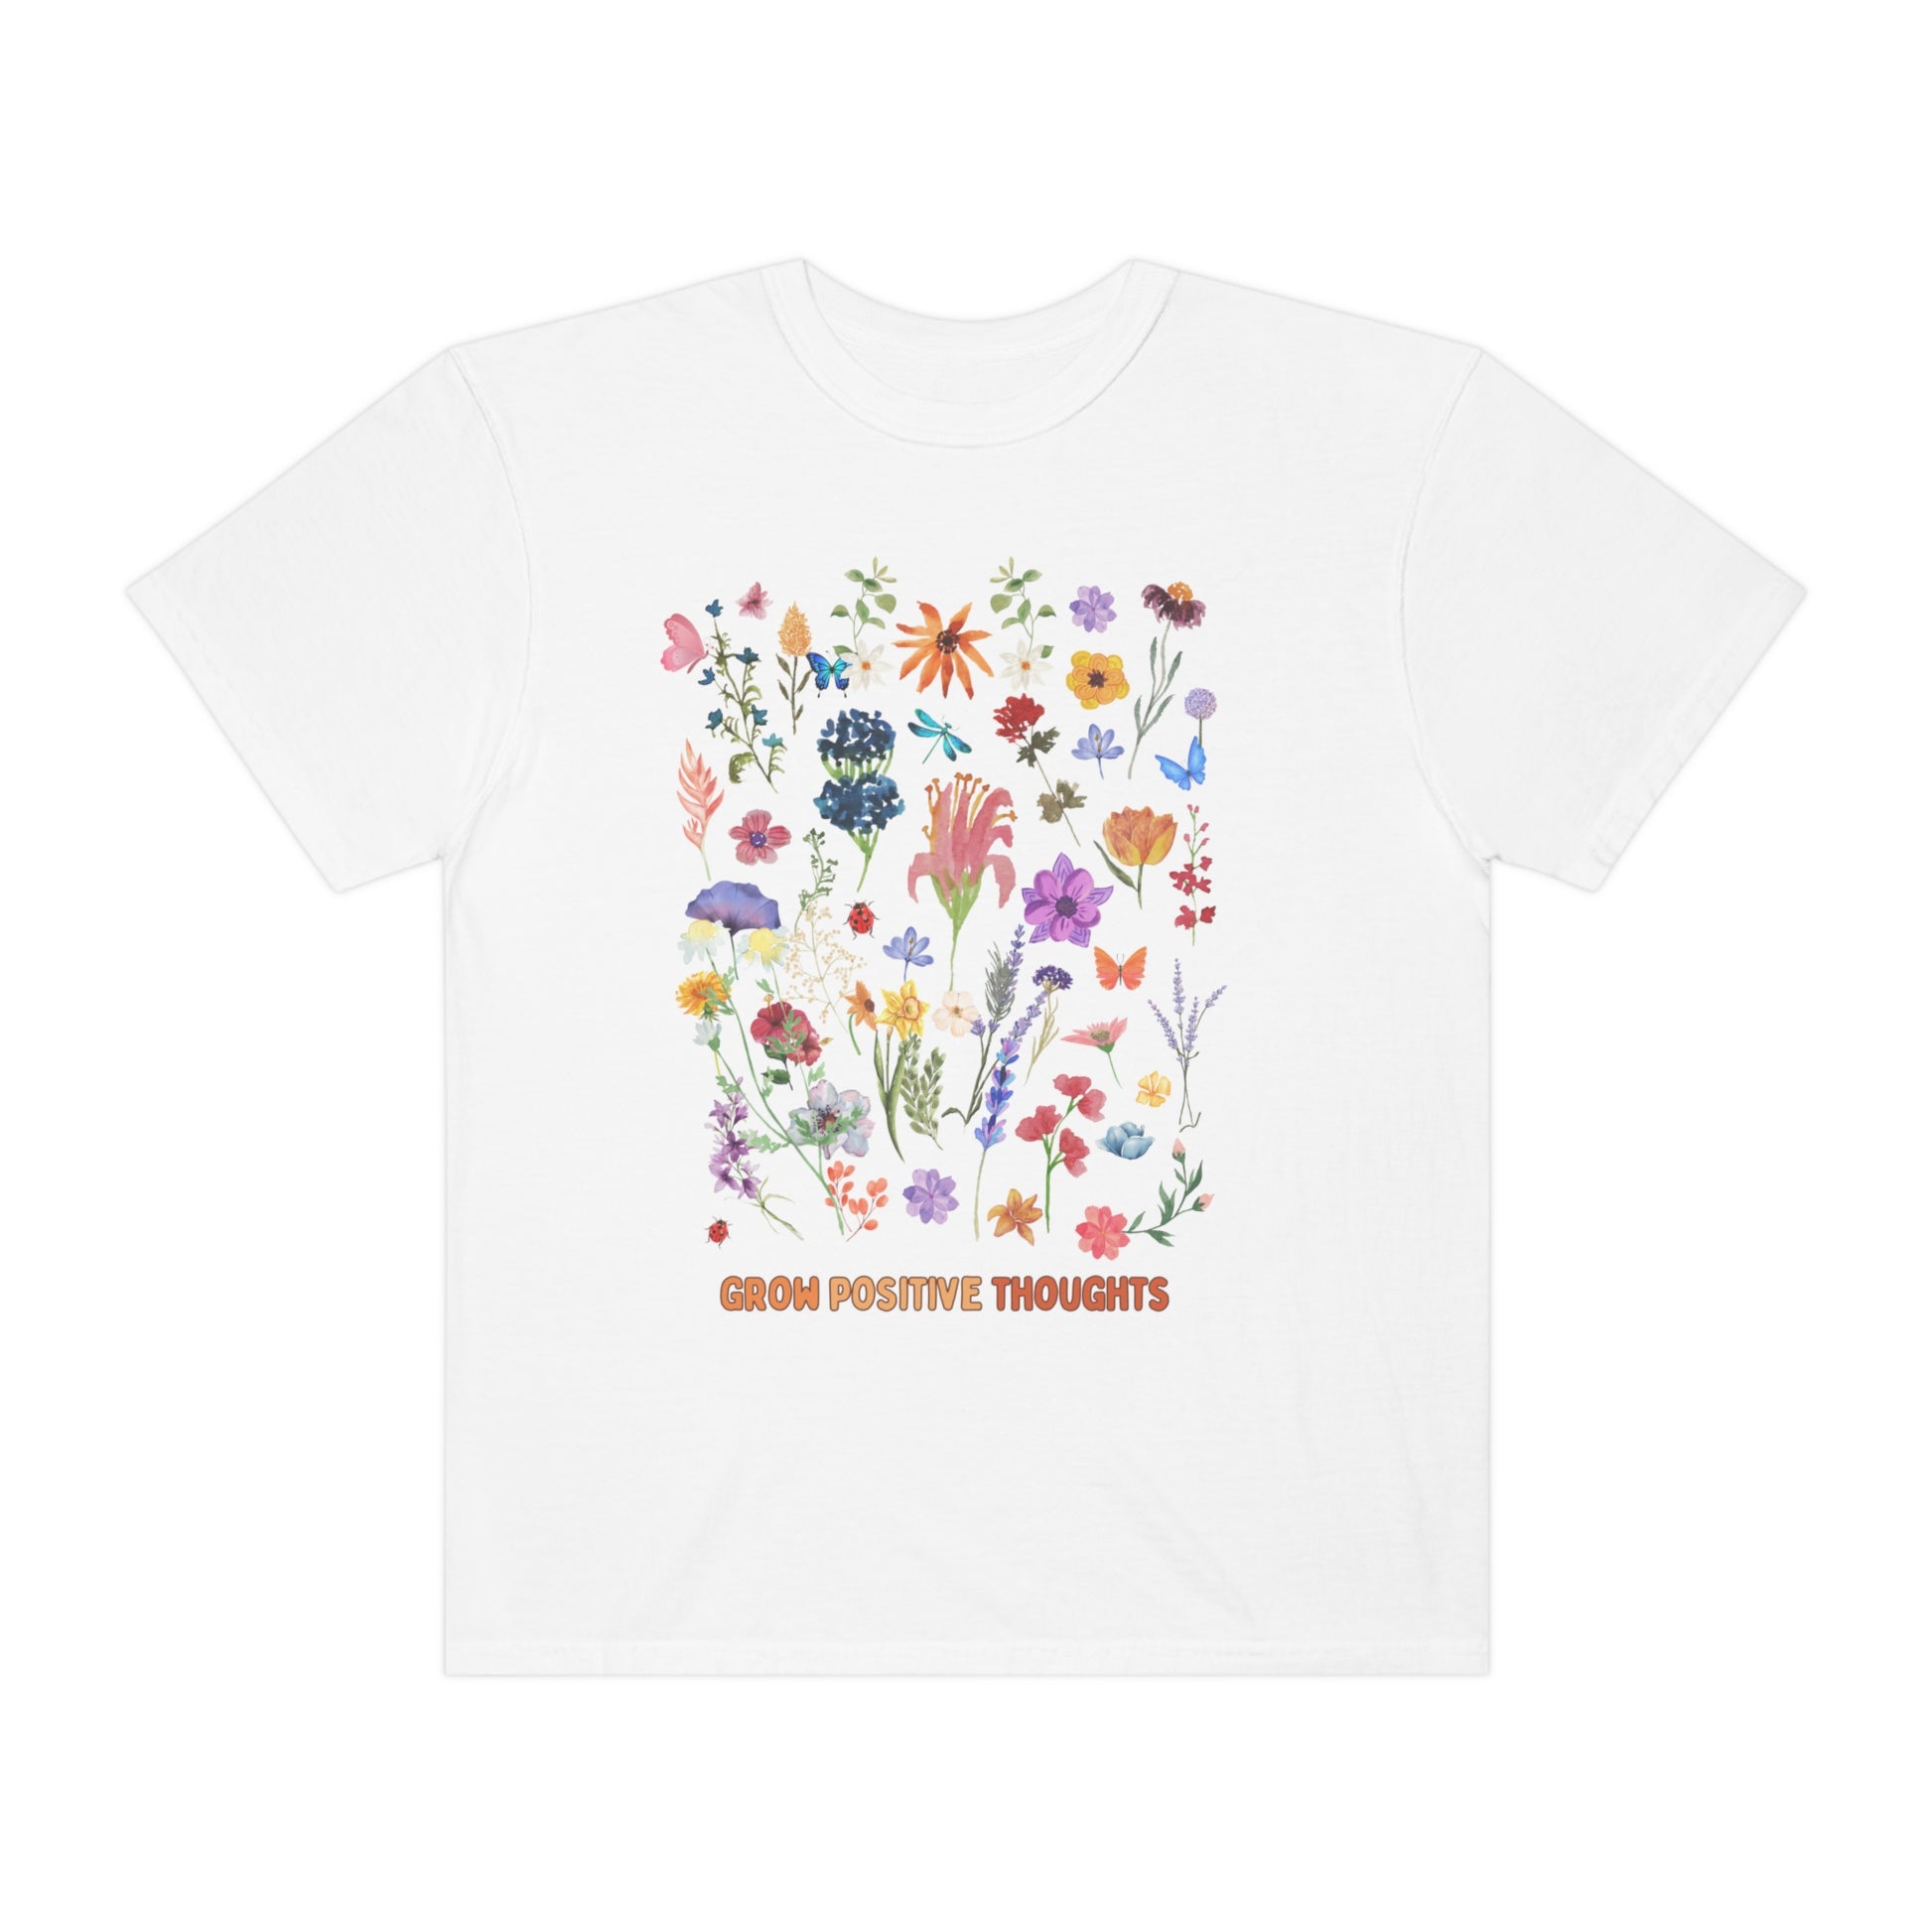 Wild flower shirt Boho wildflowers shirt Nature Shirt Botanical Shirt Garden Lover trending shirt gift for her grow positive shirt - Teez Closet